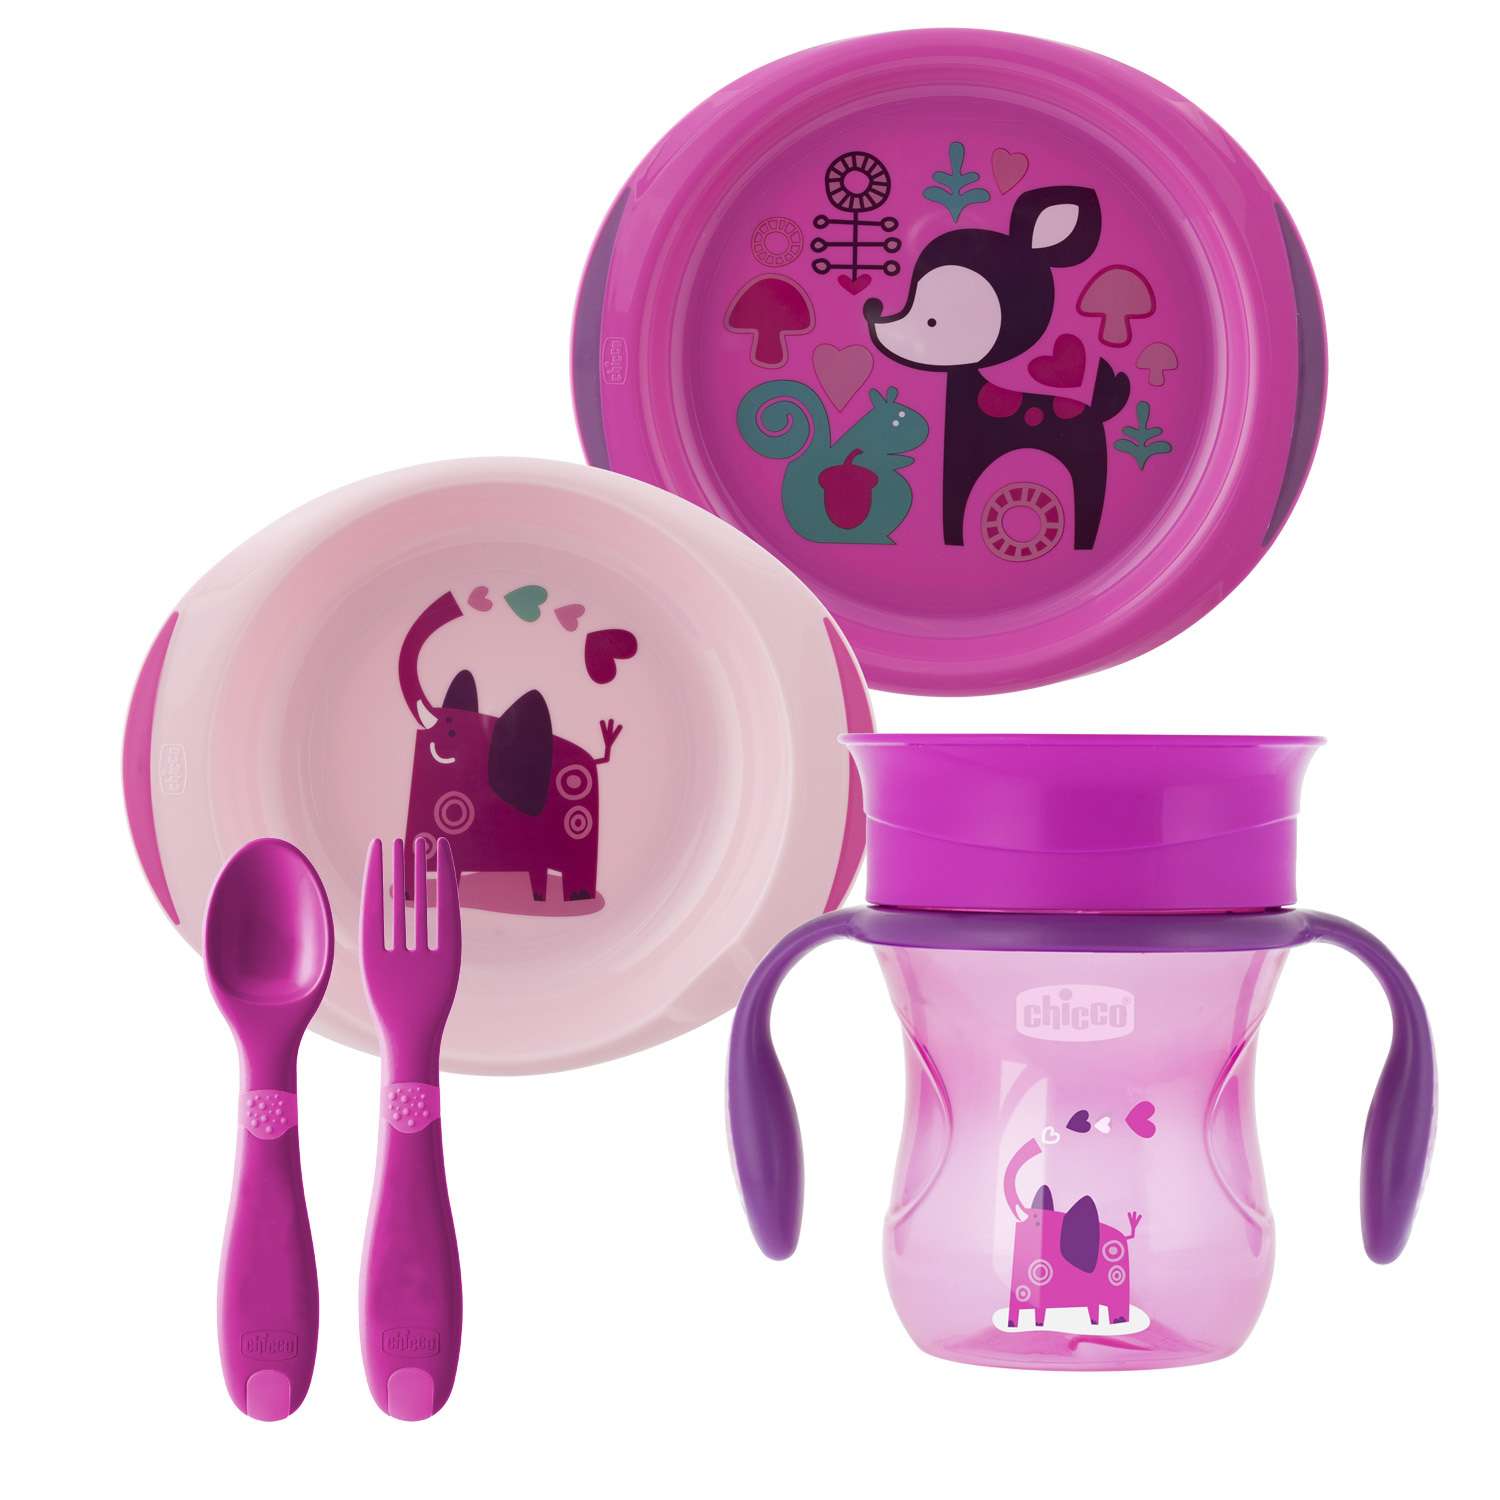 Набор посуды Chicco 5предметов с 12месяцев Розовый - фото 1